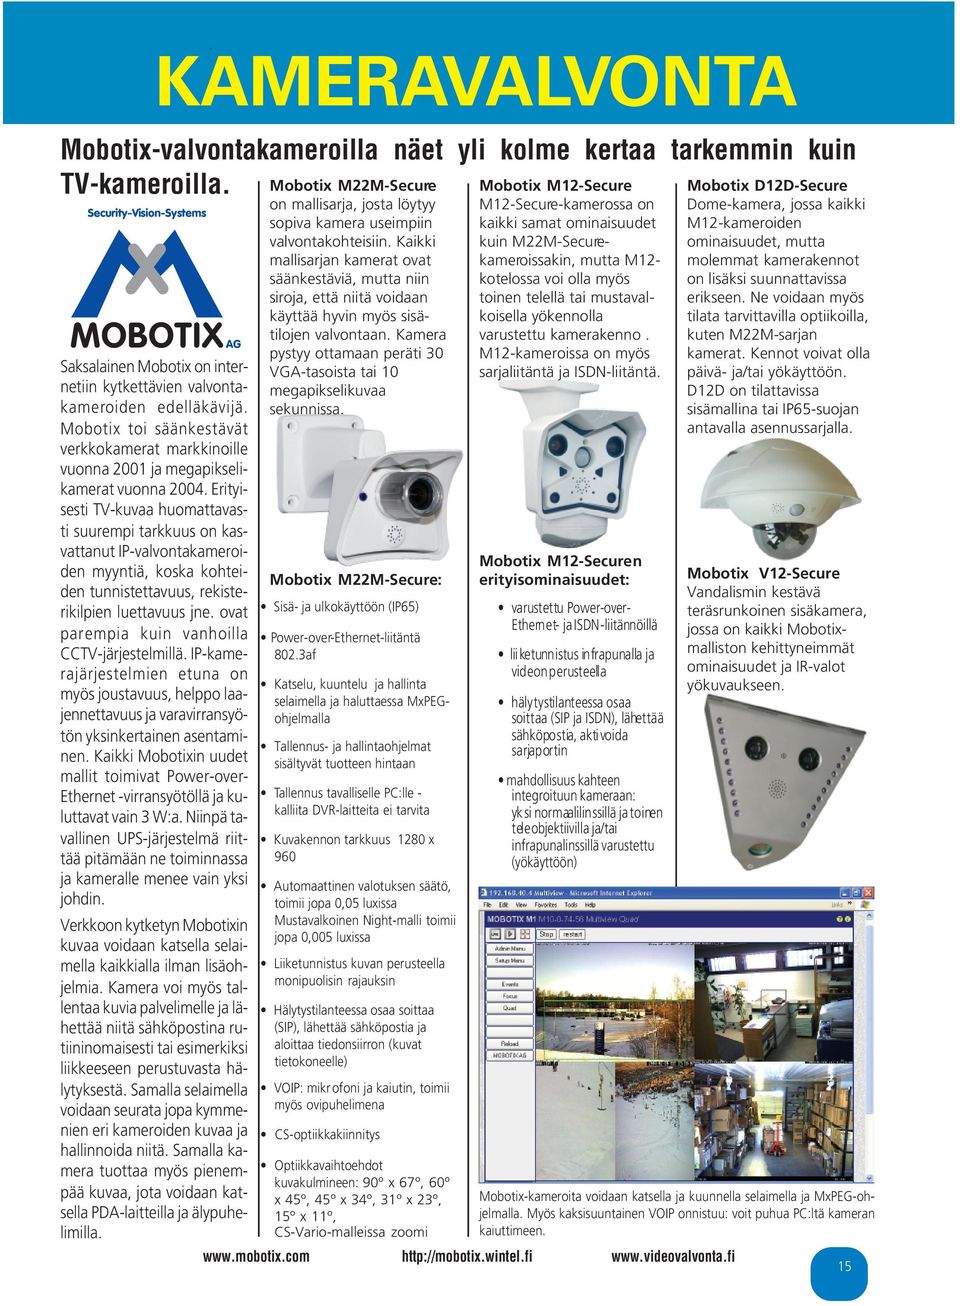 Mobotix toi säänkestävät verkkokamerat markkinoille vuonna 2001 ja megapikselikamerat vuonna 2004.